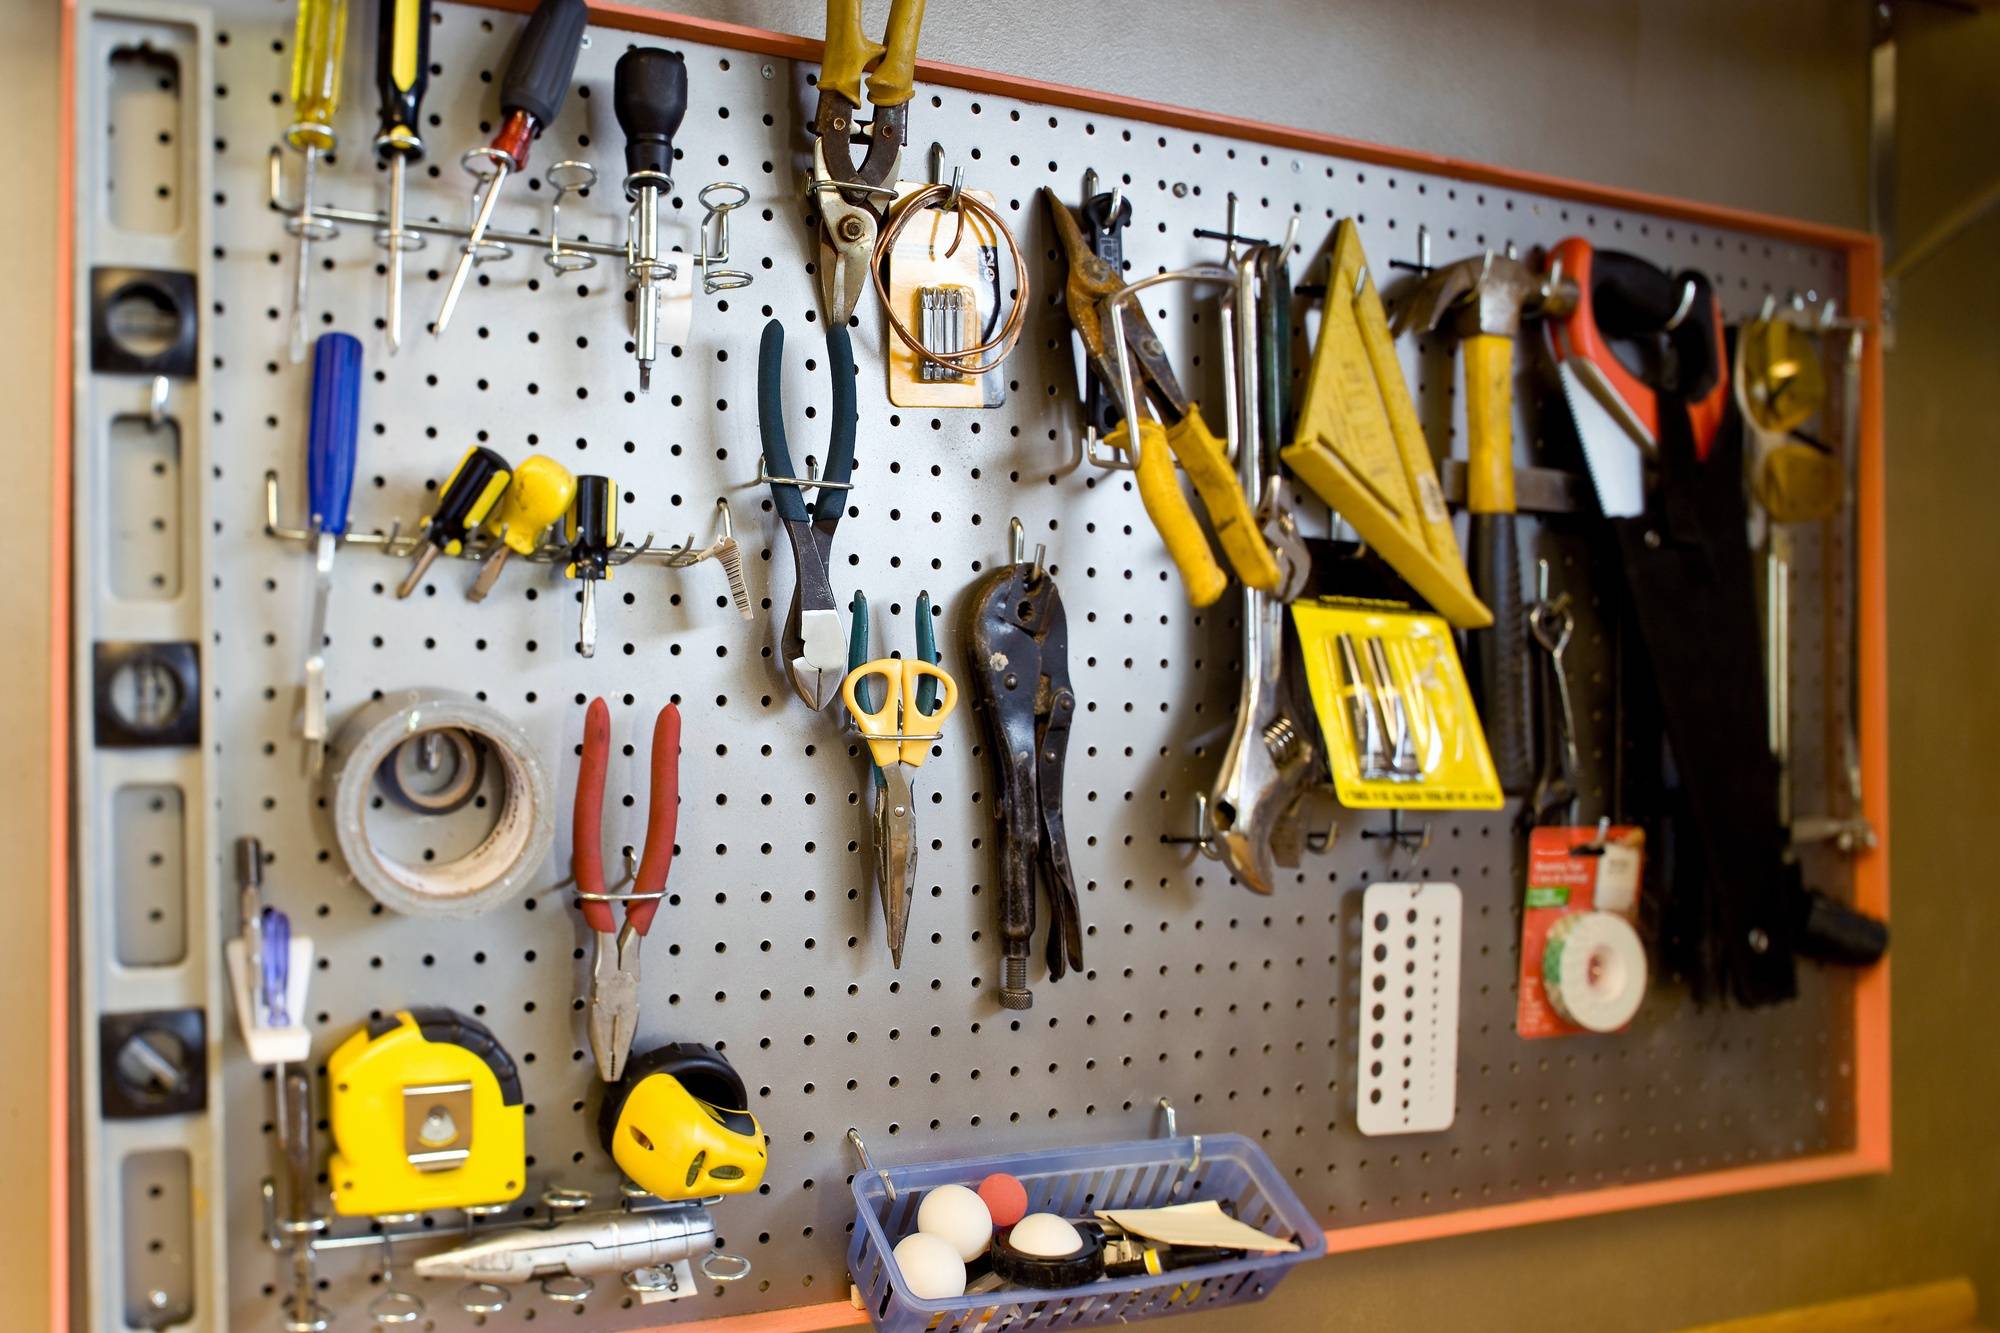 Как организовать хранение инструментов в гараже, создание стендов своими руками